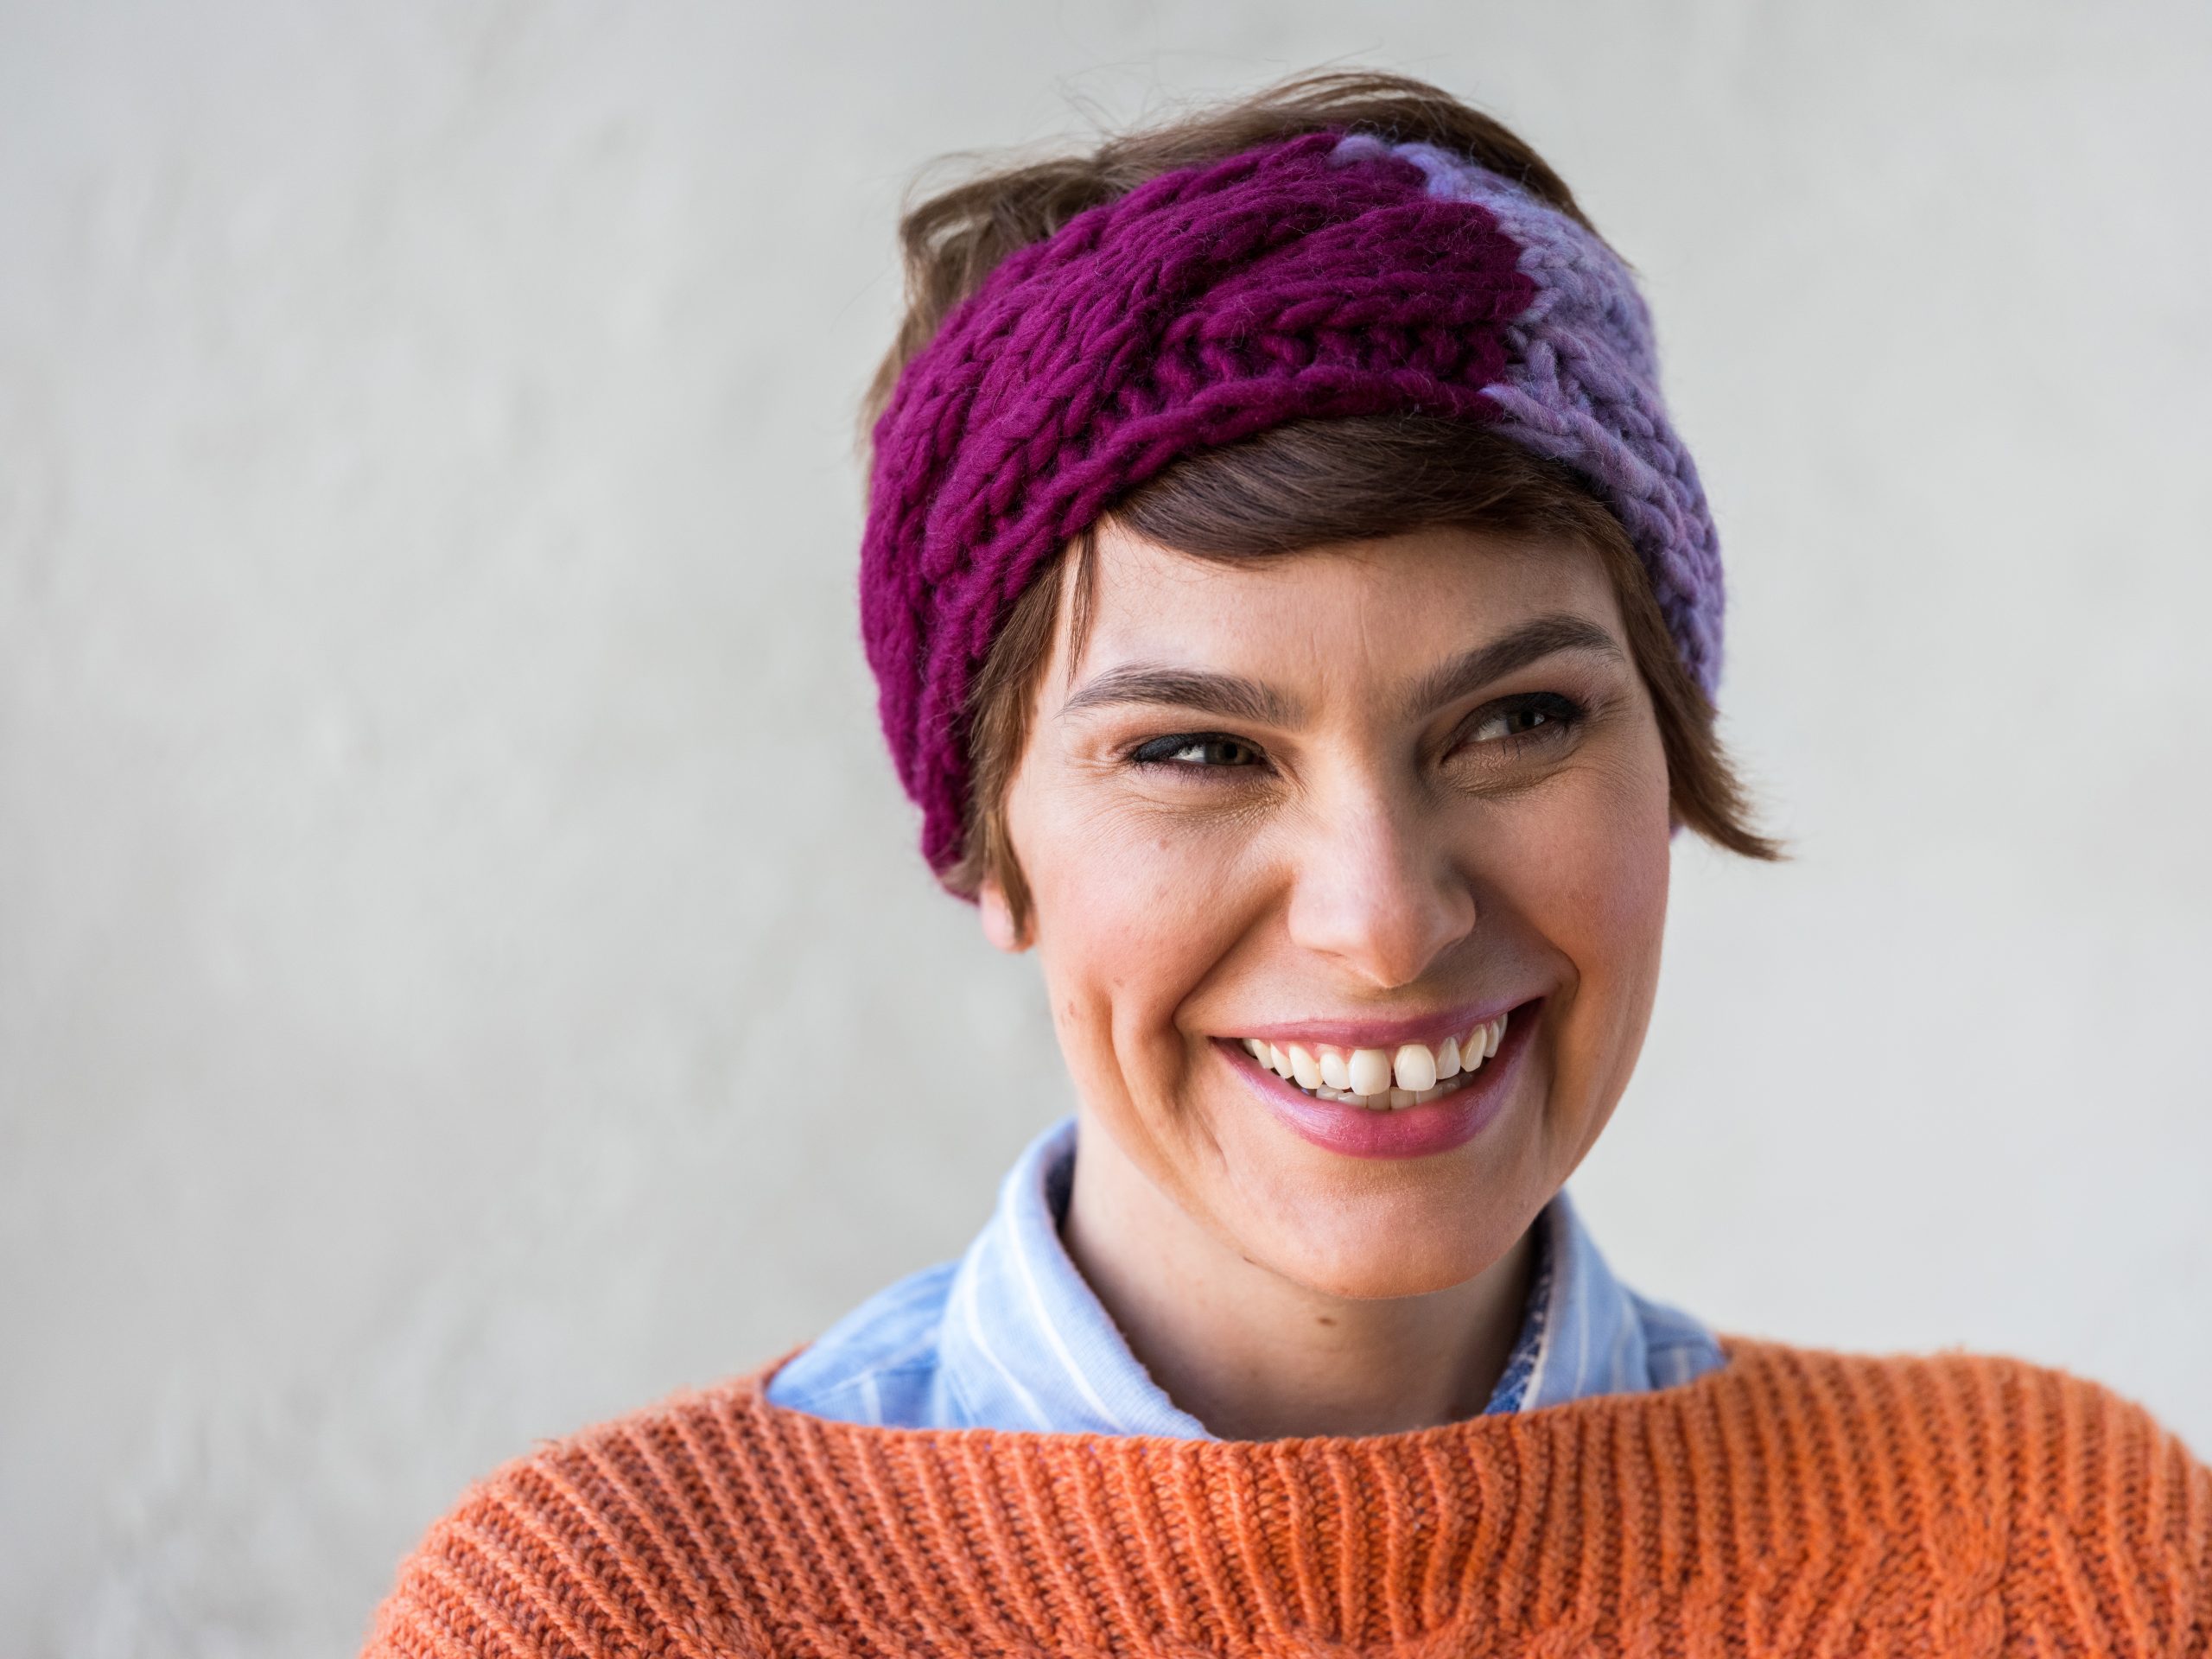 Woman wearing knit headband